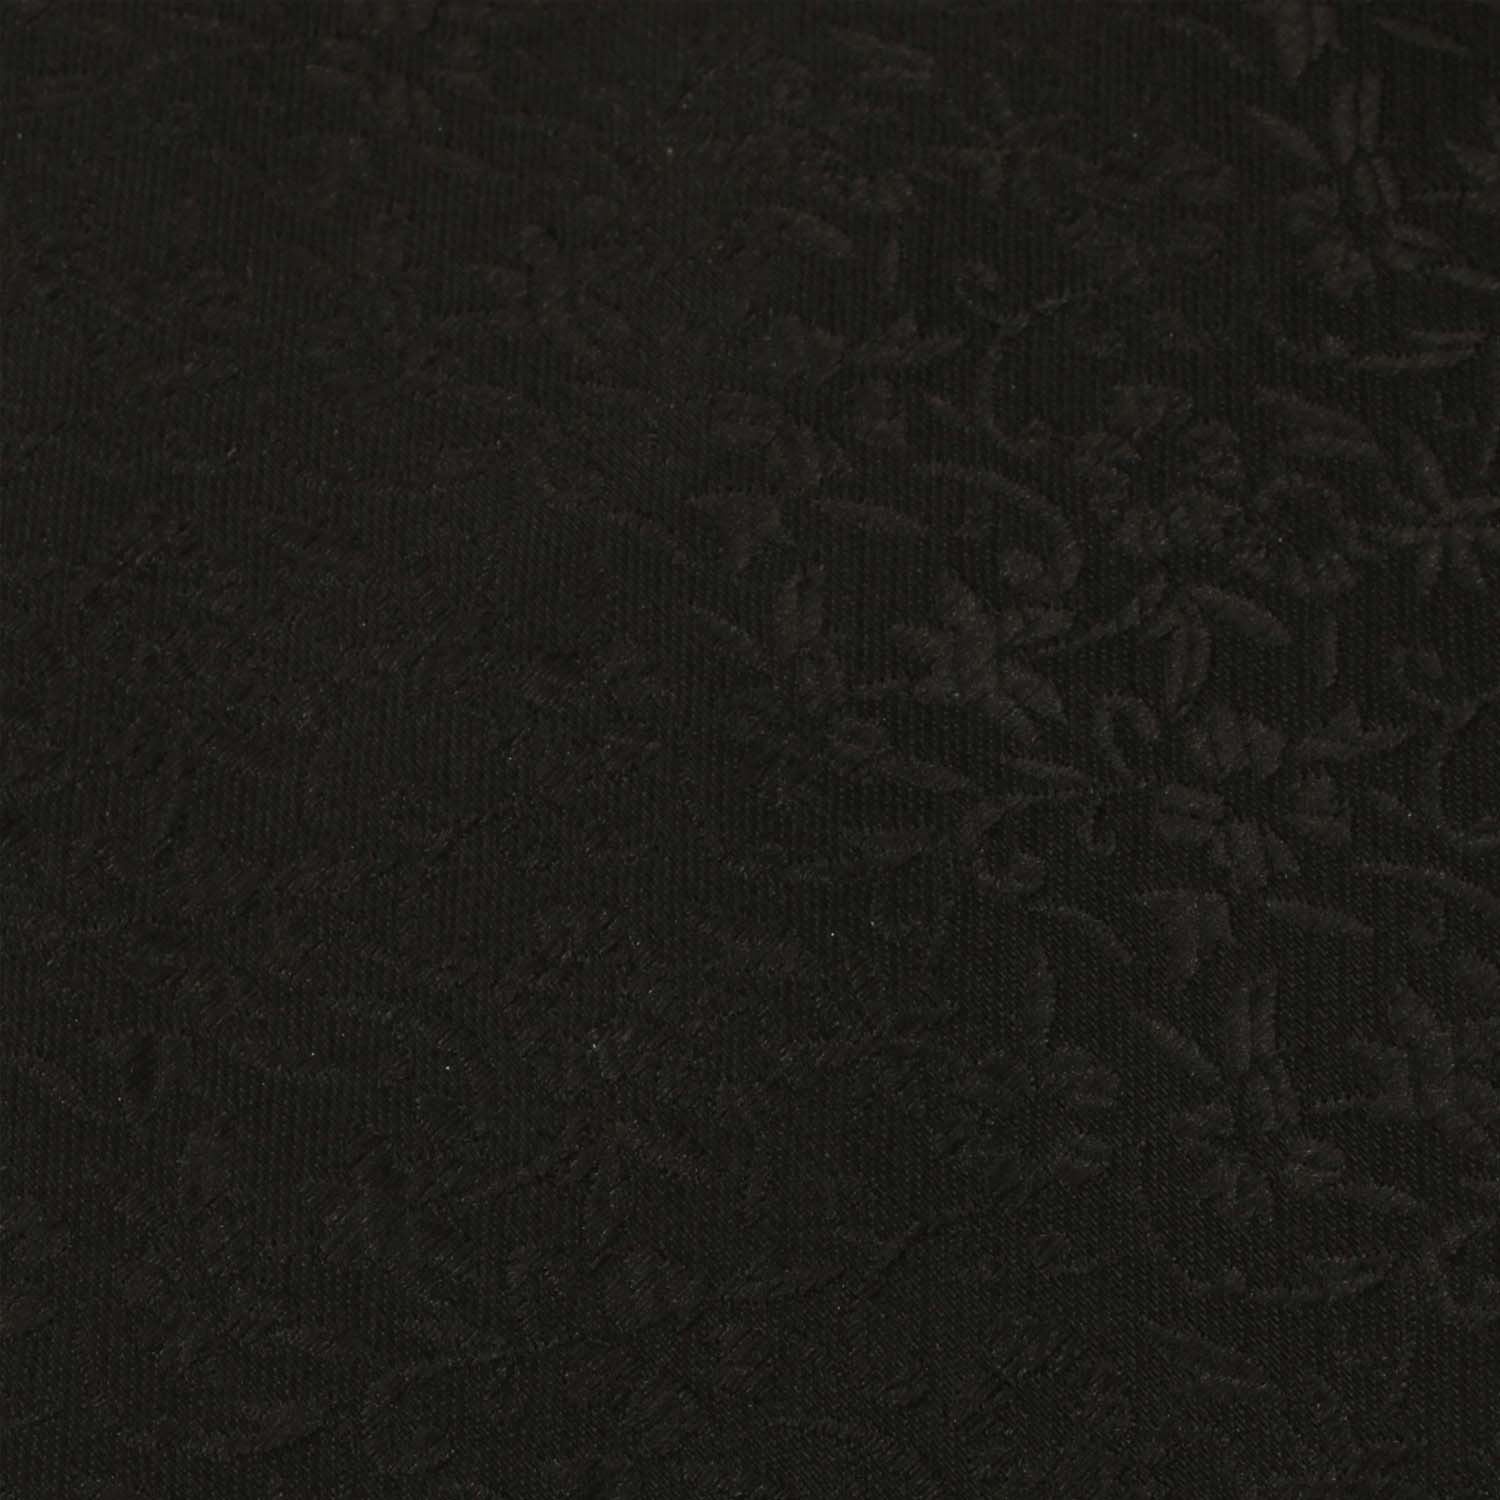 Black Pattern Fabric Skinny Tie X353Black Pattern Fabric Skinny Tie X353